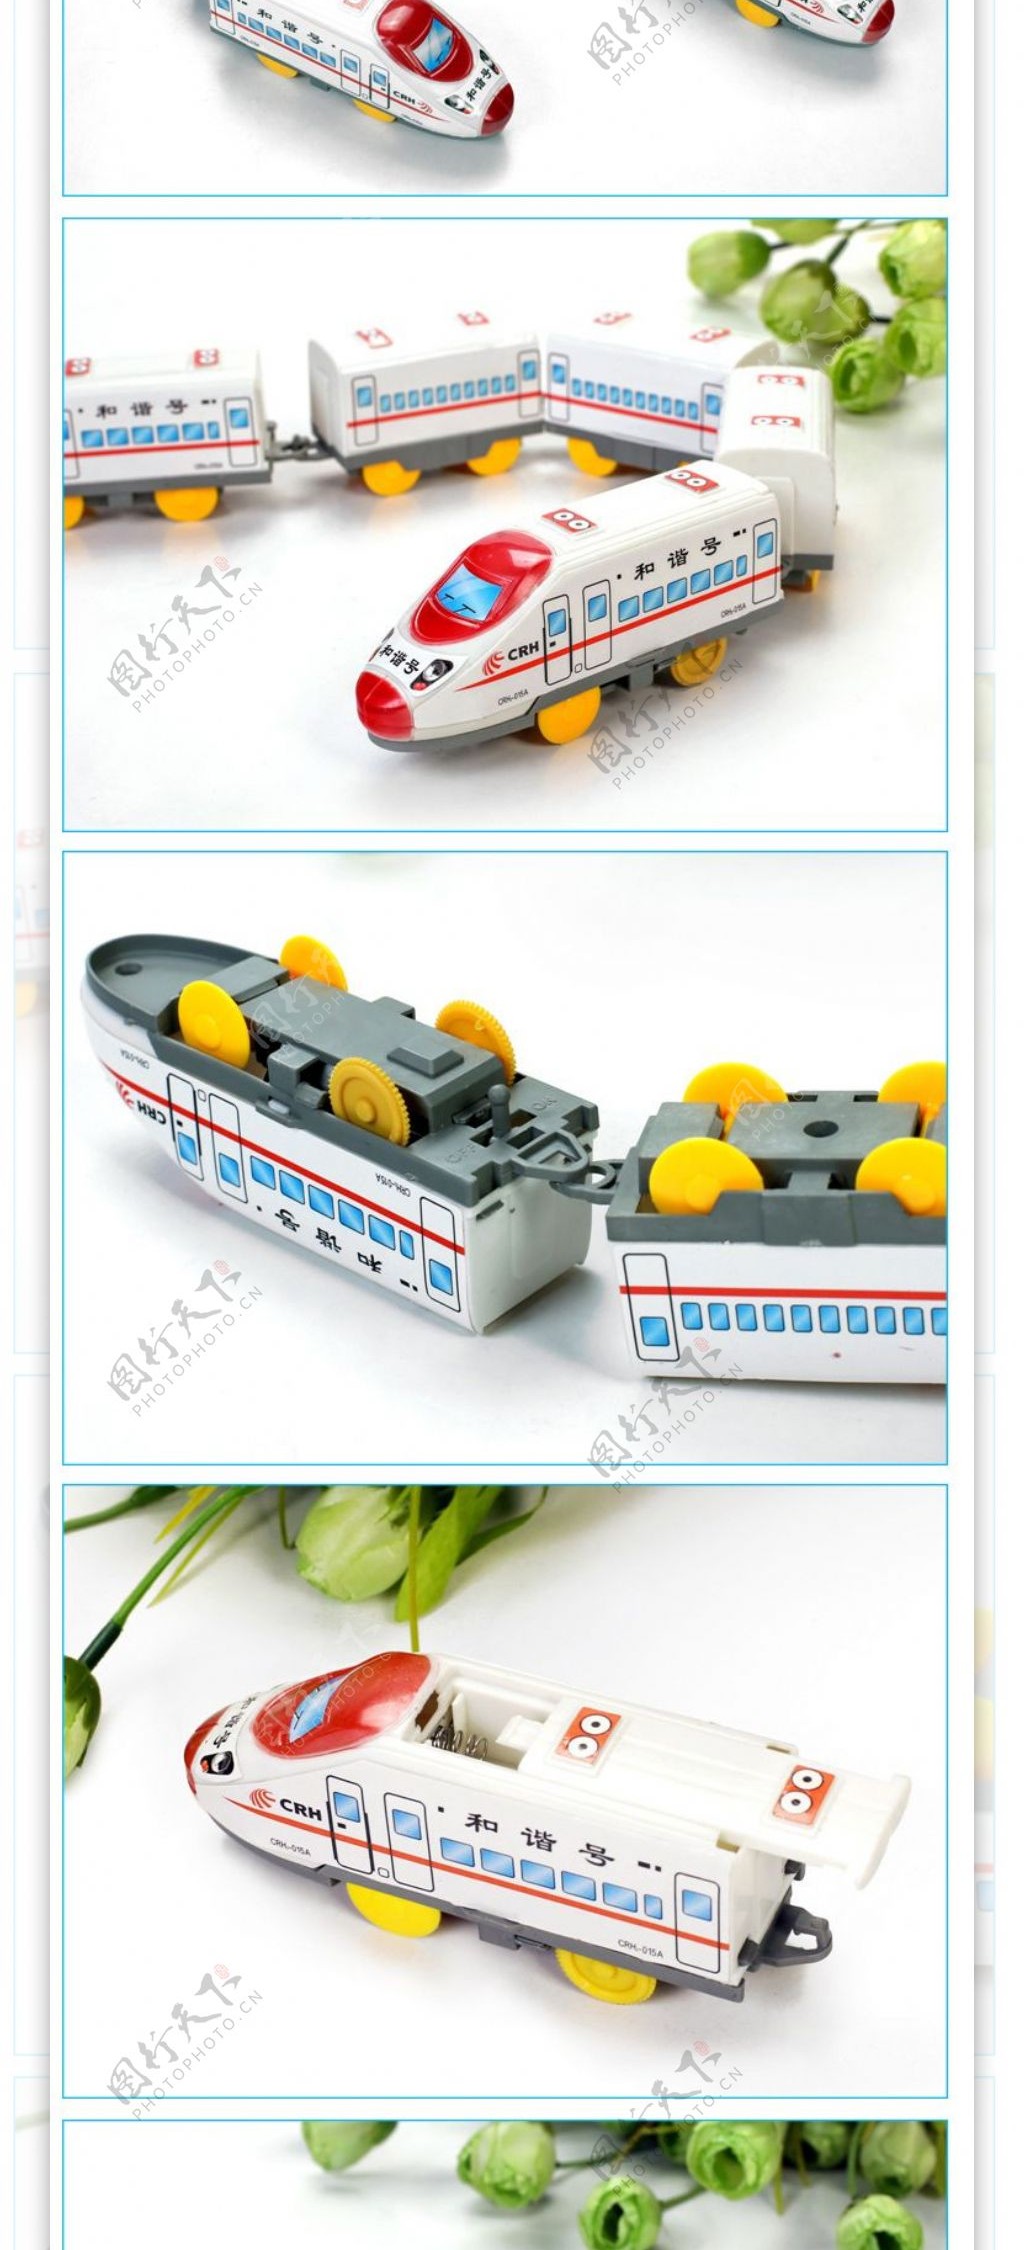 淘宝玩具火车详情页模版设计